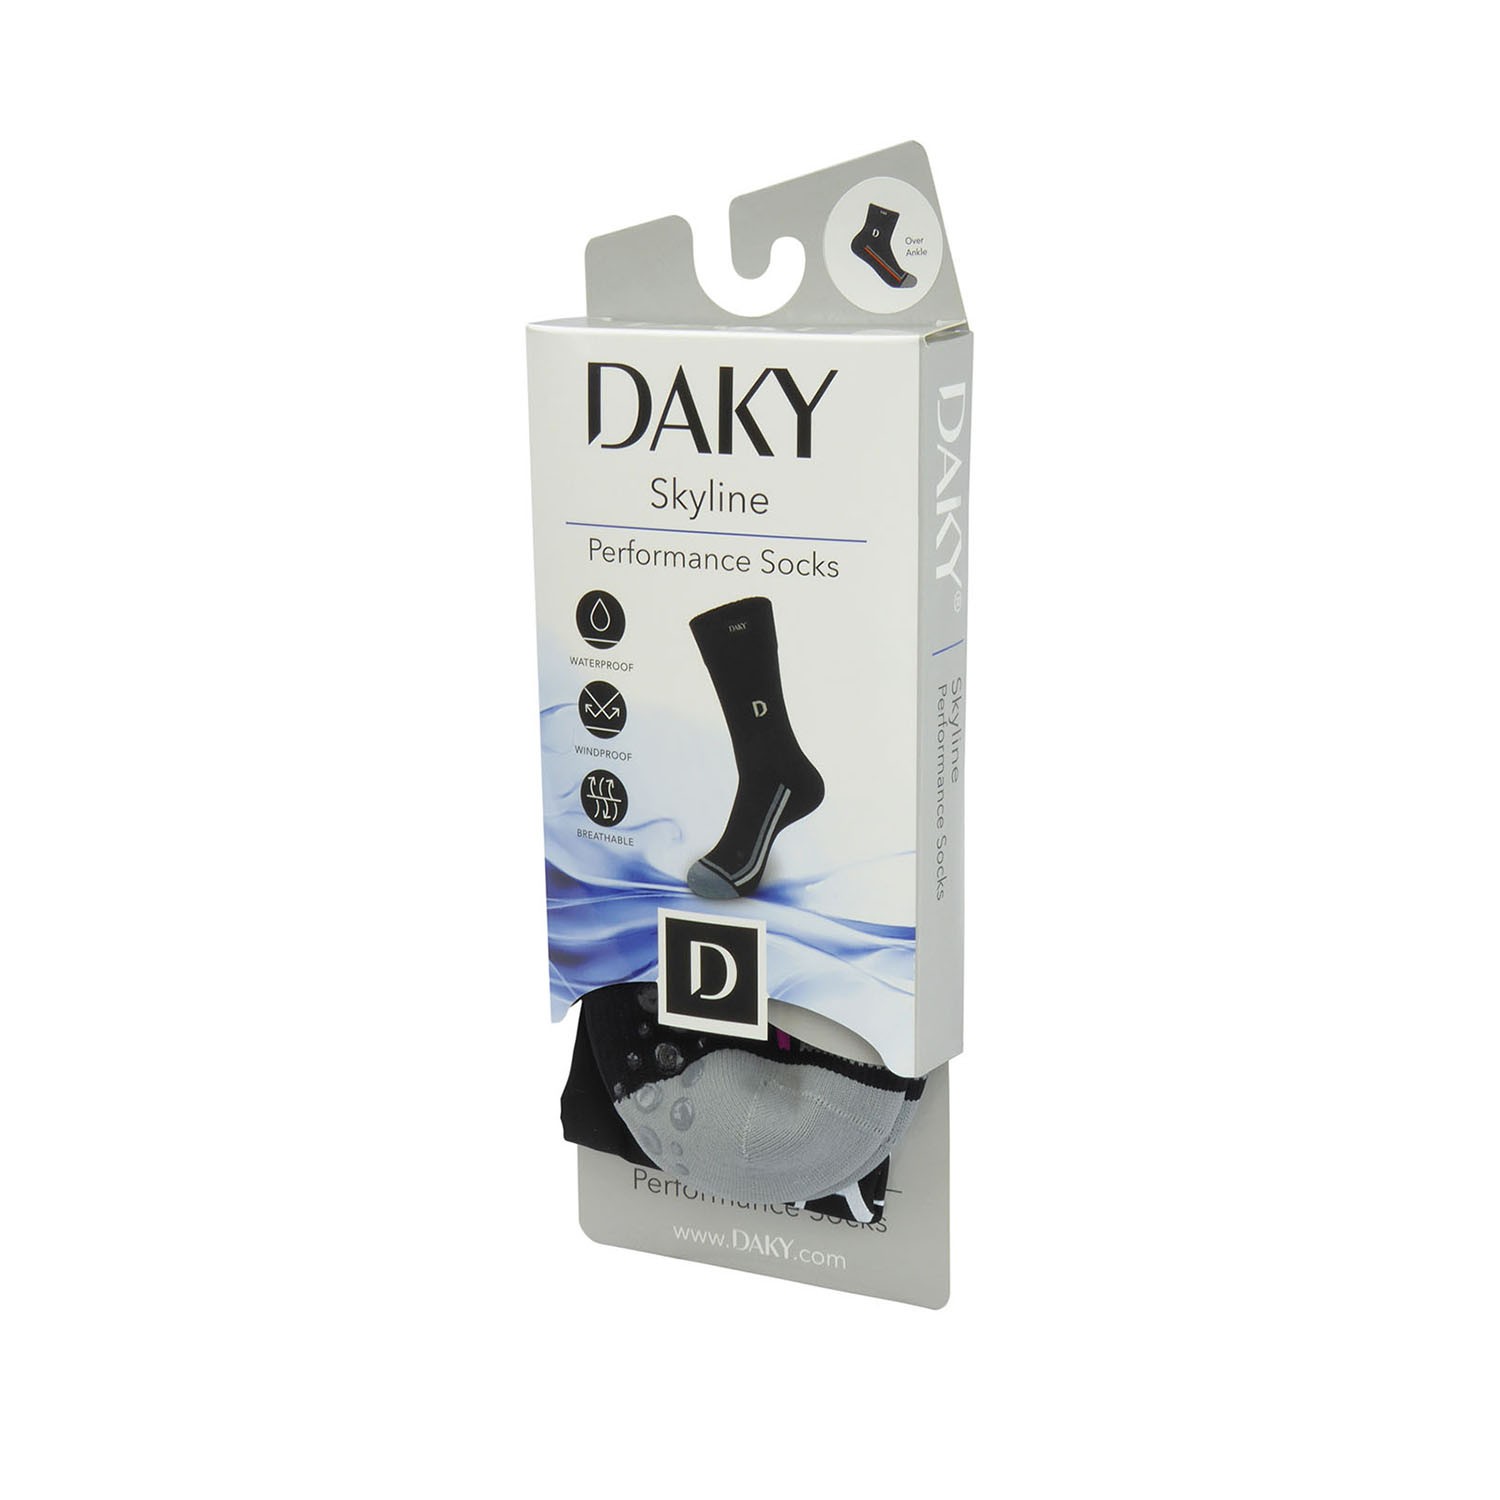 – WUDU Masah Compliant & Waterproof Socks SKYLINE Z DAKY 